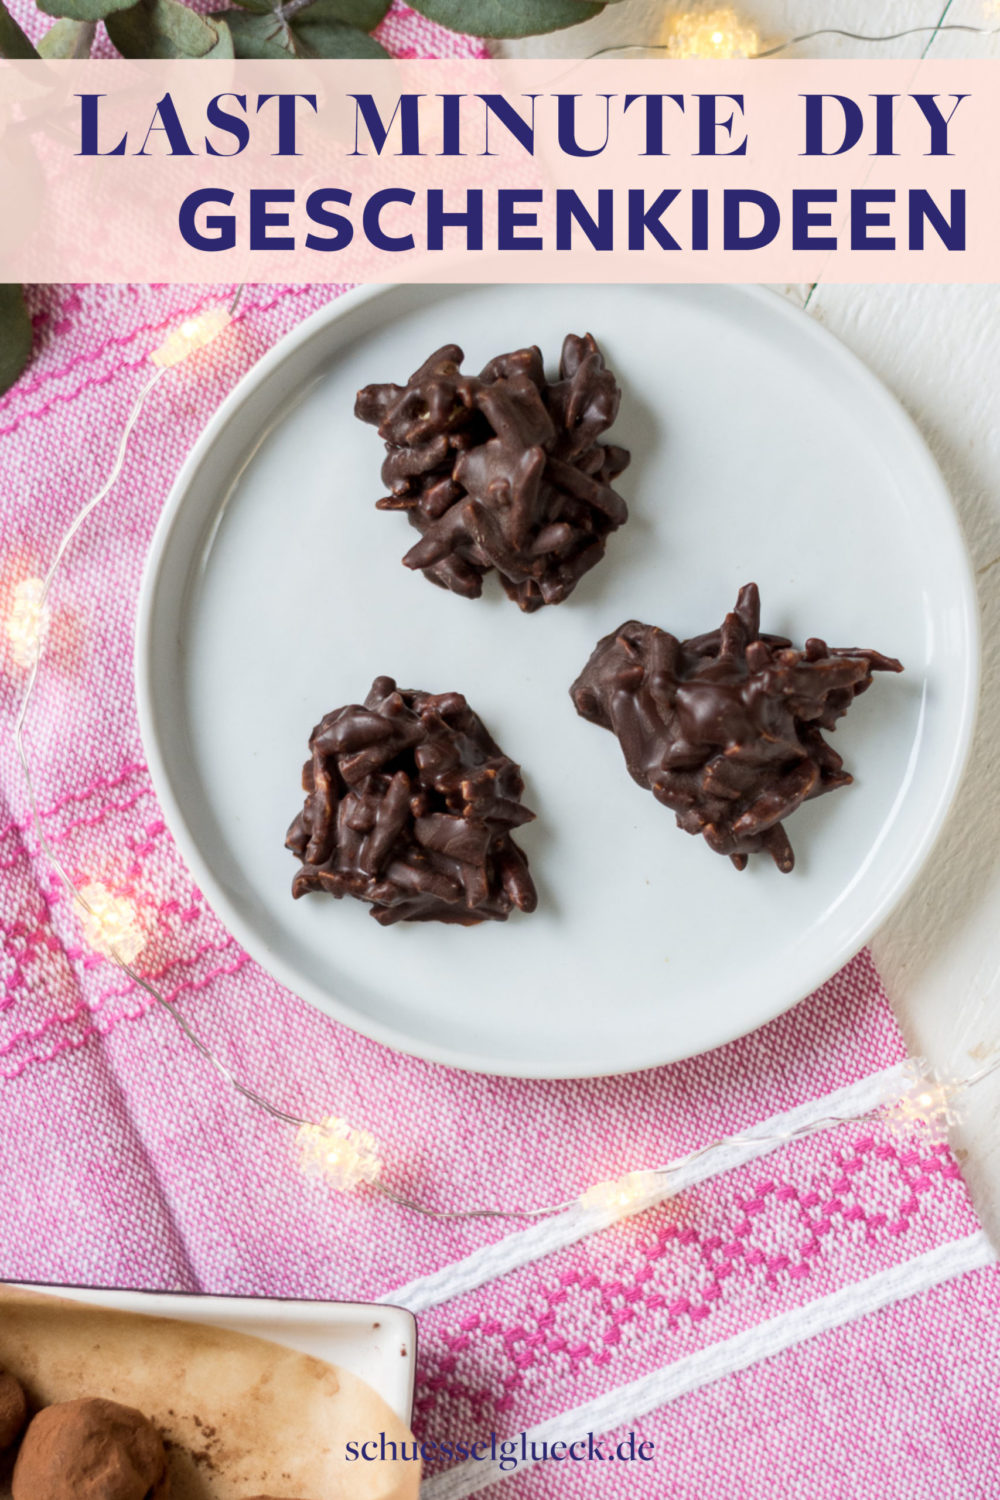 Last Minute DIY Geschenkideen aus Schokolade – superschnell & einfach gemacht!